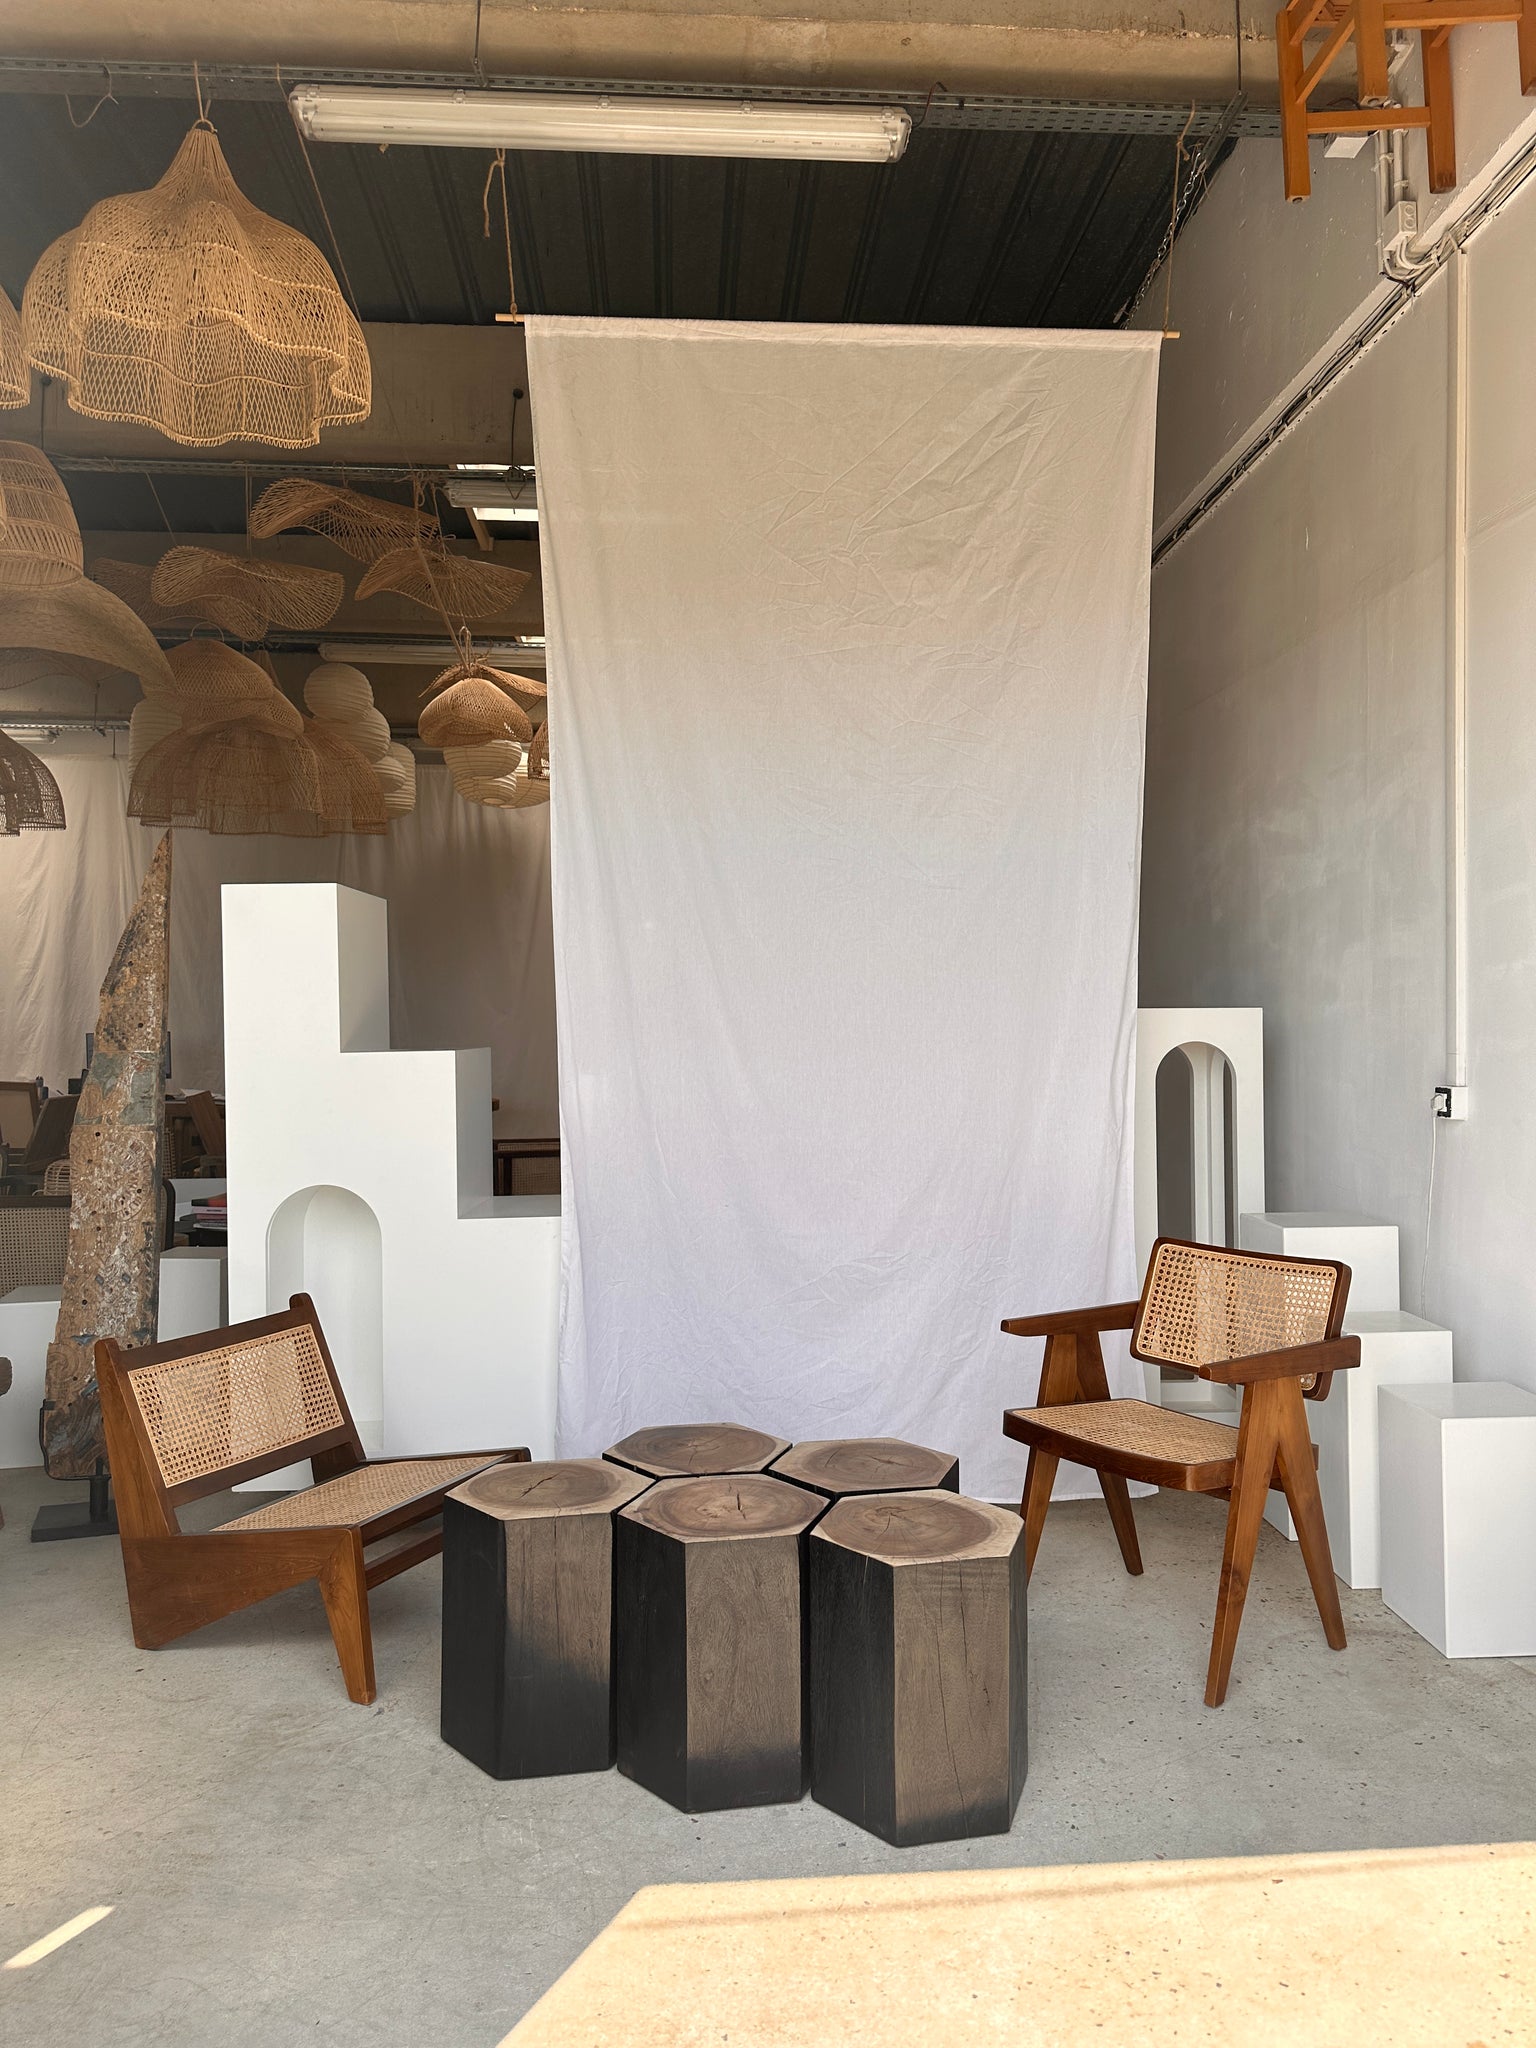 Ensemble de 5 stools hexagonaux en suar bicolore formant mobilier d'appoint modulaire (table basse / assise)